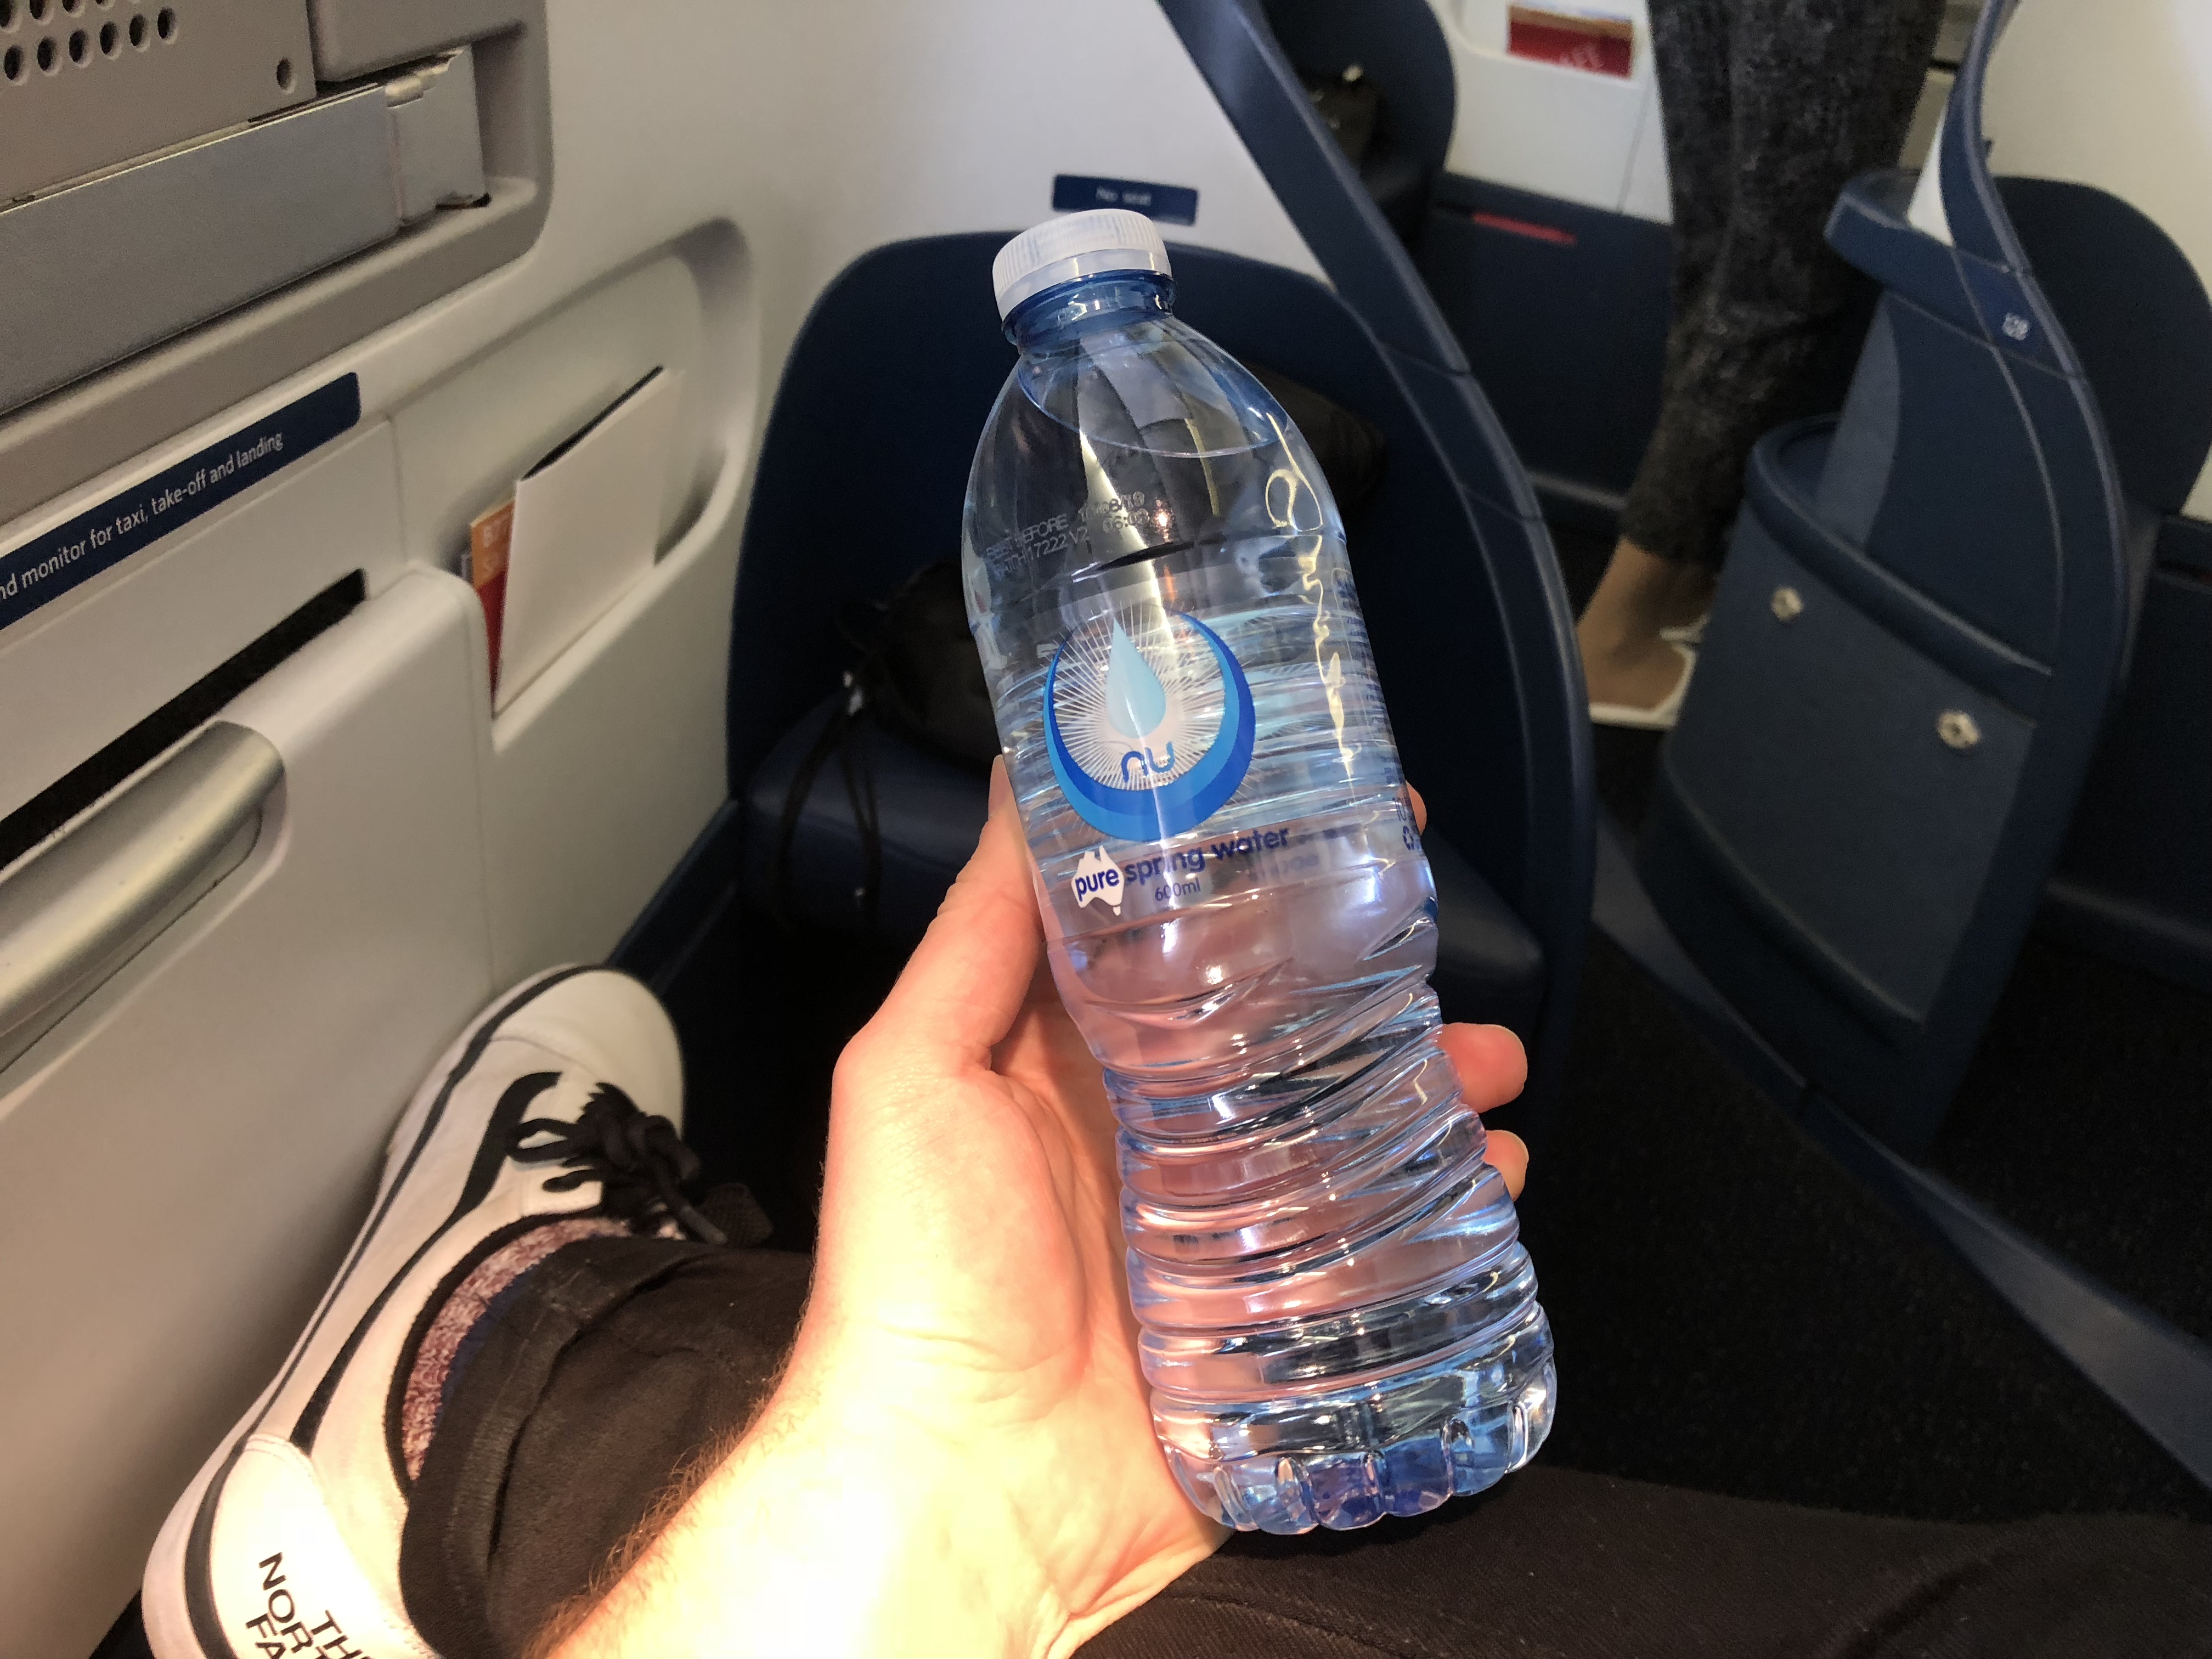 Delta One pre-flight bottle water, Sydney to Los Angeles